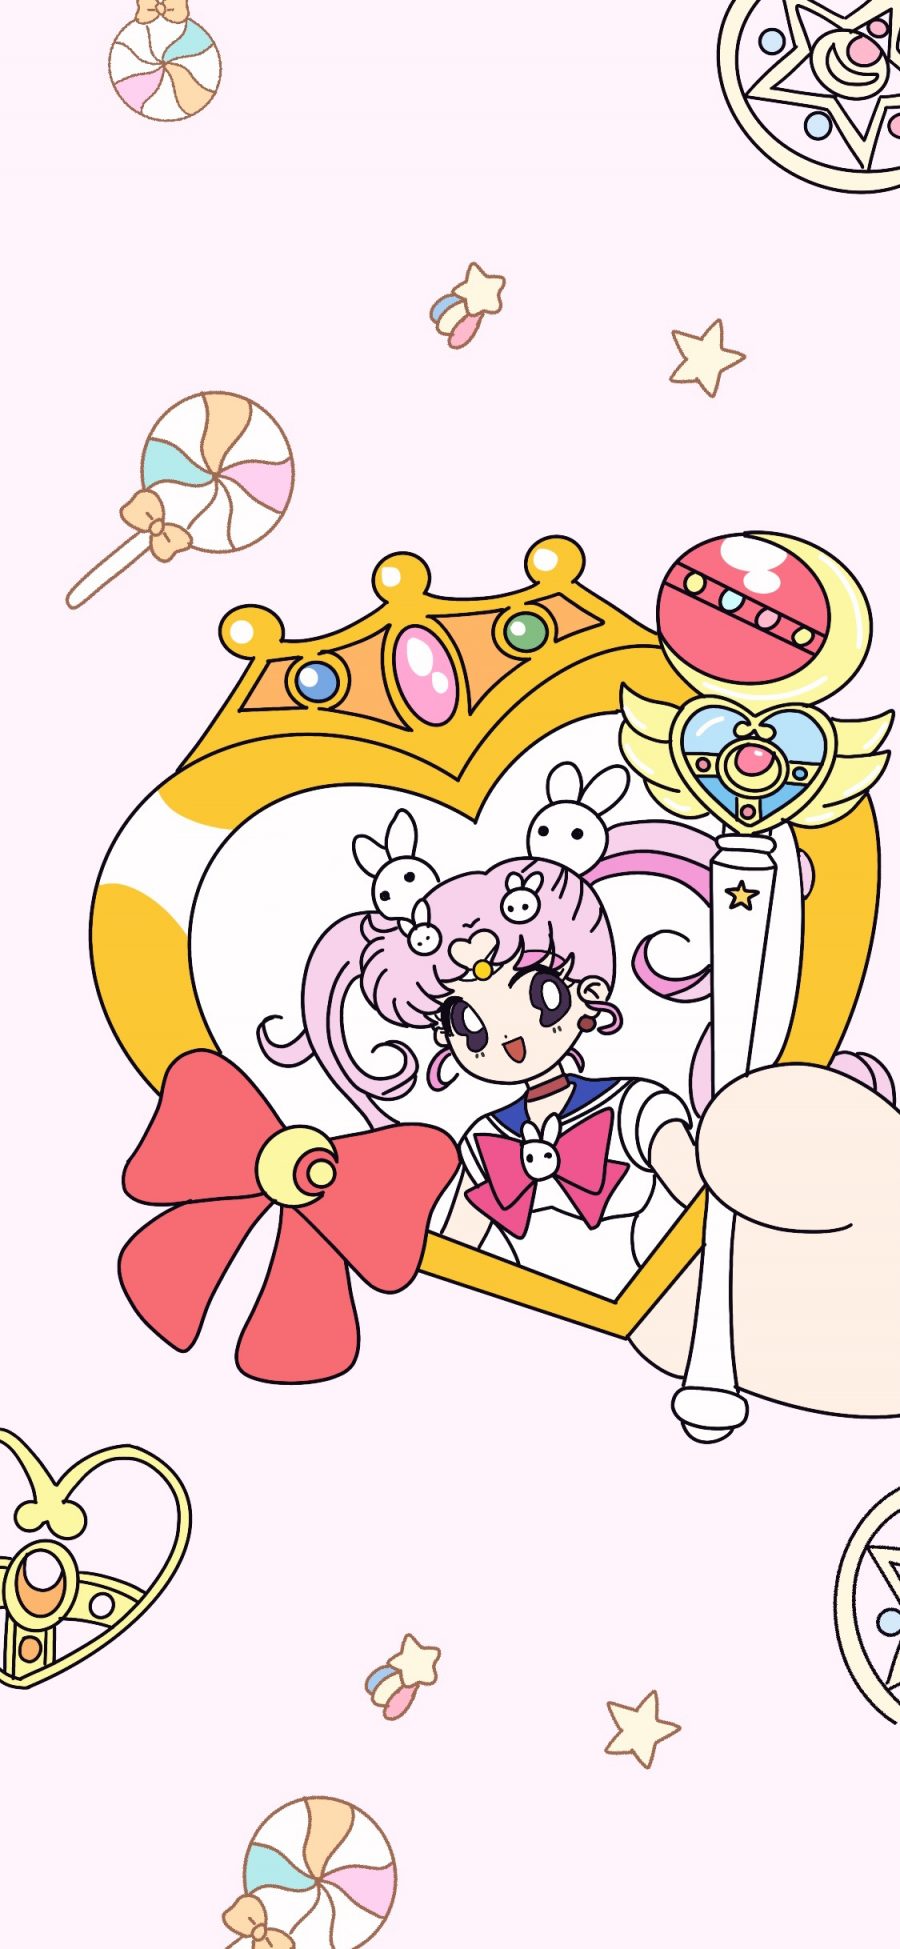 [2436×1125]美少女战士 魔法棒 小小兔 粉色 蝴蝶结 苹果手机动漫壁纸图片